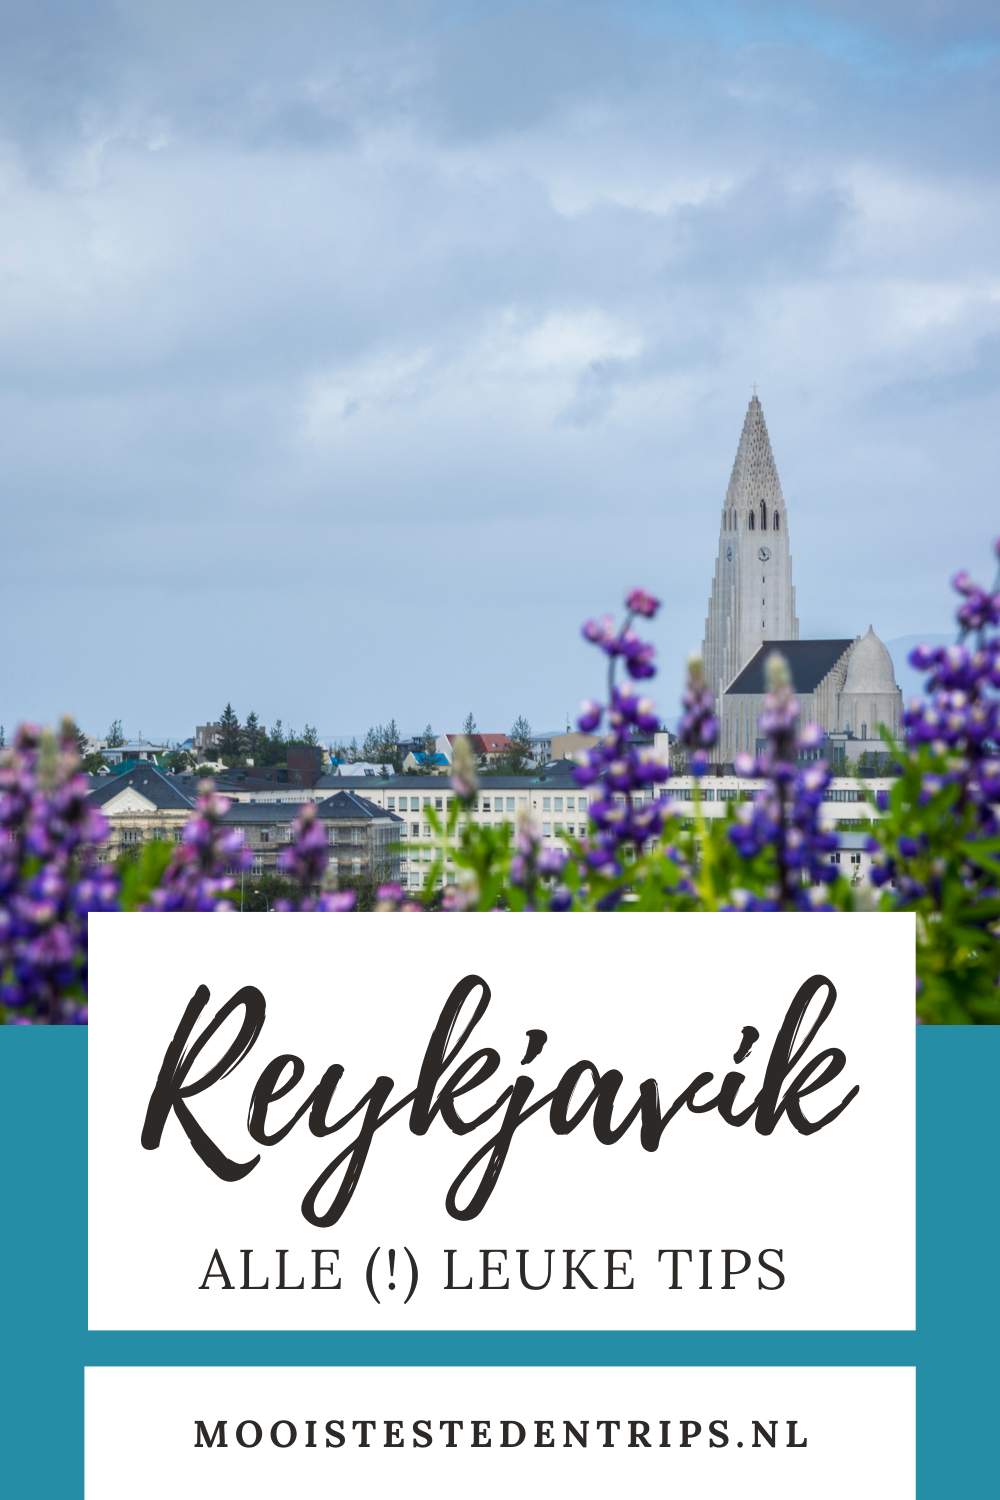 Reykjavik, IJsland: wat te doen in Reykjavik? Bekijk de leukste bezienswaardigheden in Reykjavik | Mooistestedentrips.nl